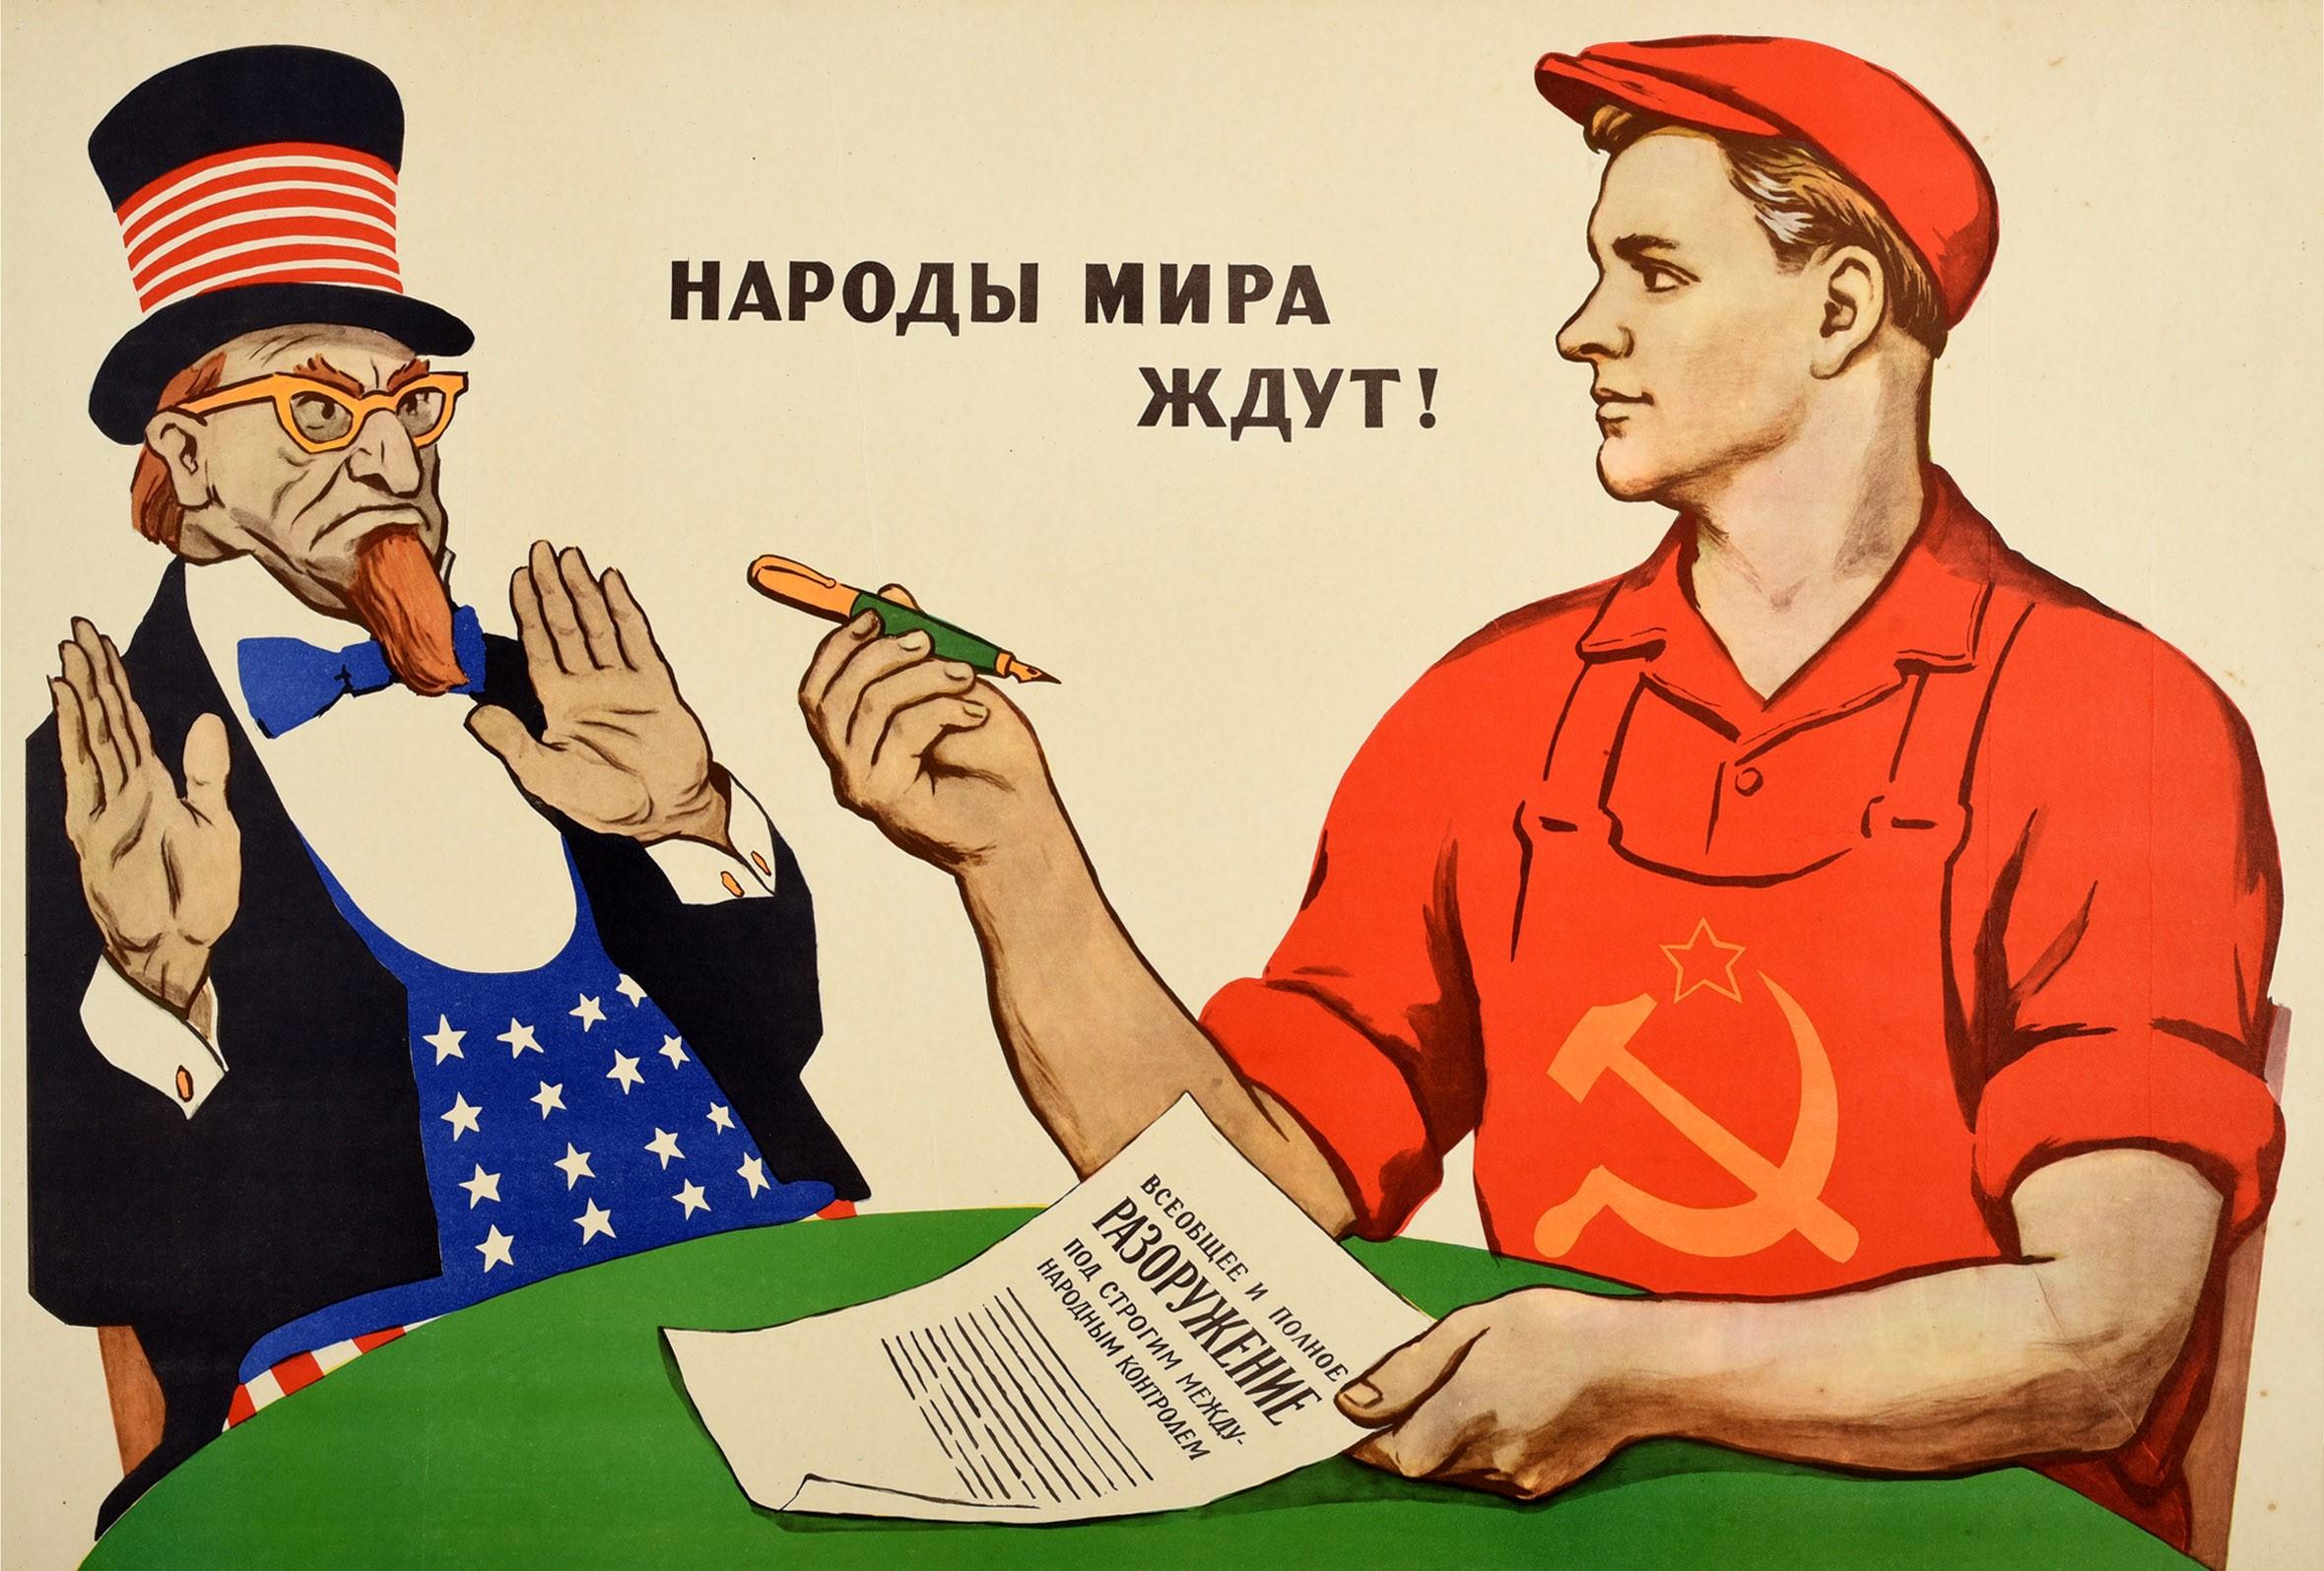 Affiche de propagande soviétique vintage originale datant de la guerre froide - Les peuples du monde attendent ! ? ????? ? ??? ? ???! - avec un jeune ouvrier portant l'emblème soviétique de la faucille et du marteau sur sa salopette rouge et tenant